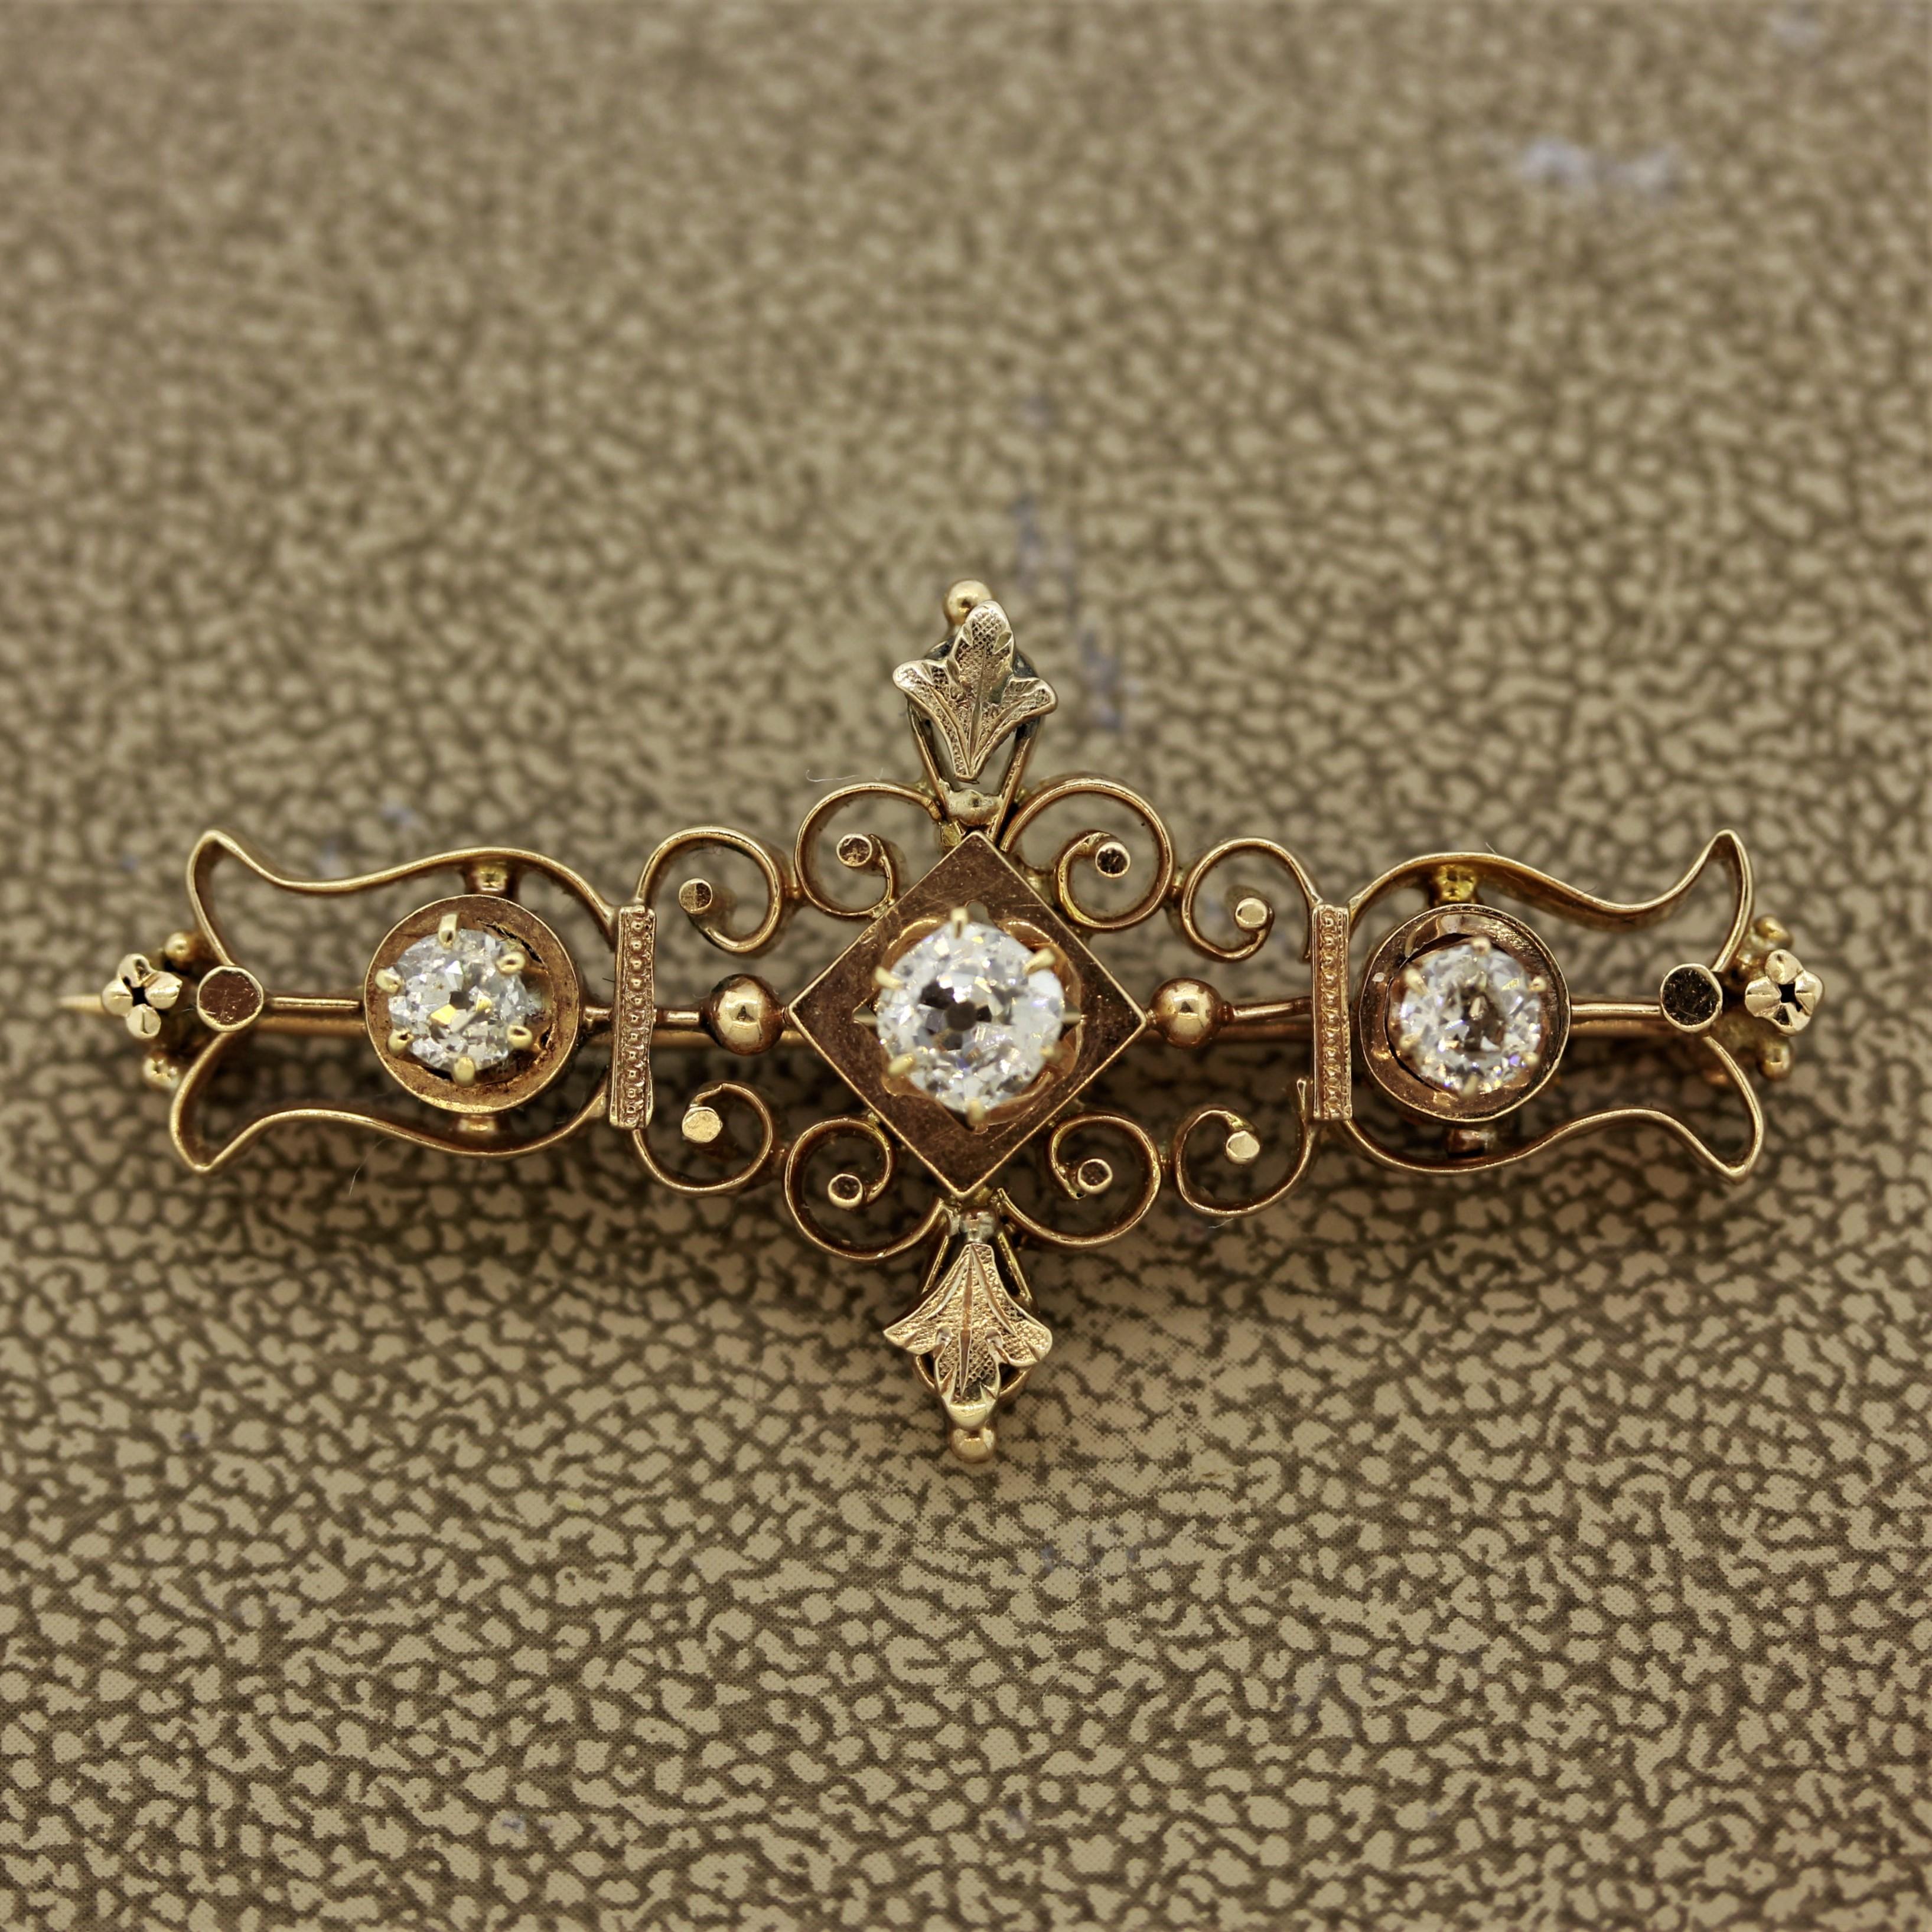 Élégante antiquité de la fin du XIXe siècle, cette épingle victorienne est ornée de trois diamants ronds de taille ancienne pesant au total 0,75 carat. La pièce présente des caractéristiques naturelles et des filigranes sur le pourtour, à la manière